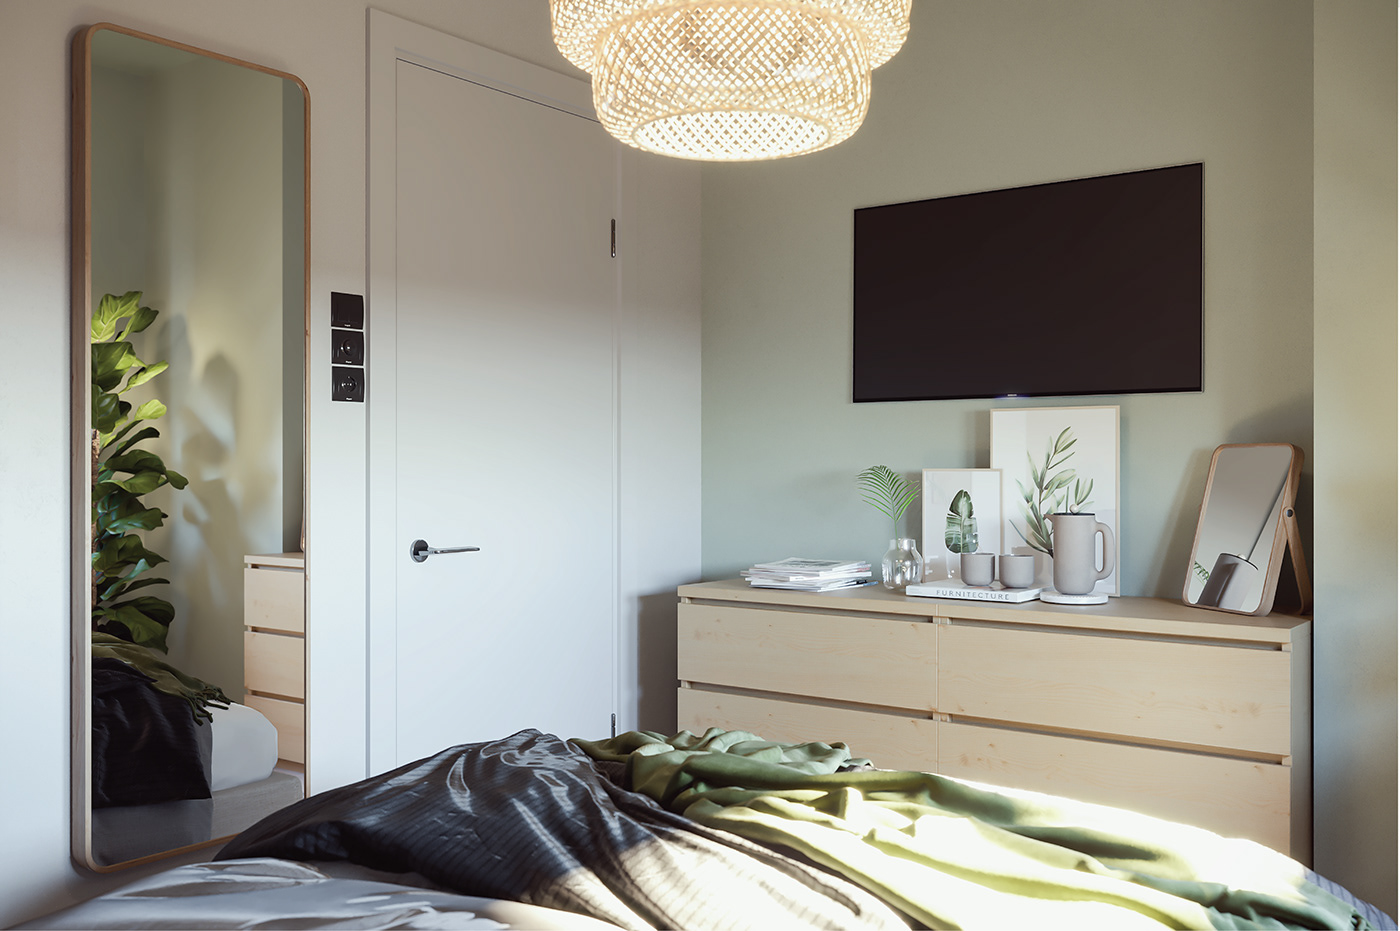 Tông màu trắng chủ đạo và gương lớn gắn tường tạo cảm giác rộng rãi, thoáng sáng hơn cho không gian ngủ nghỉ trong căn hộ 30m2.